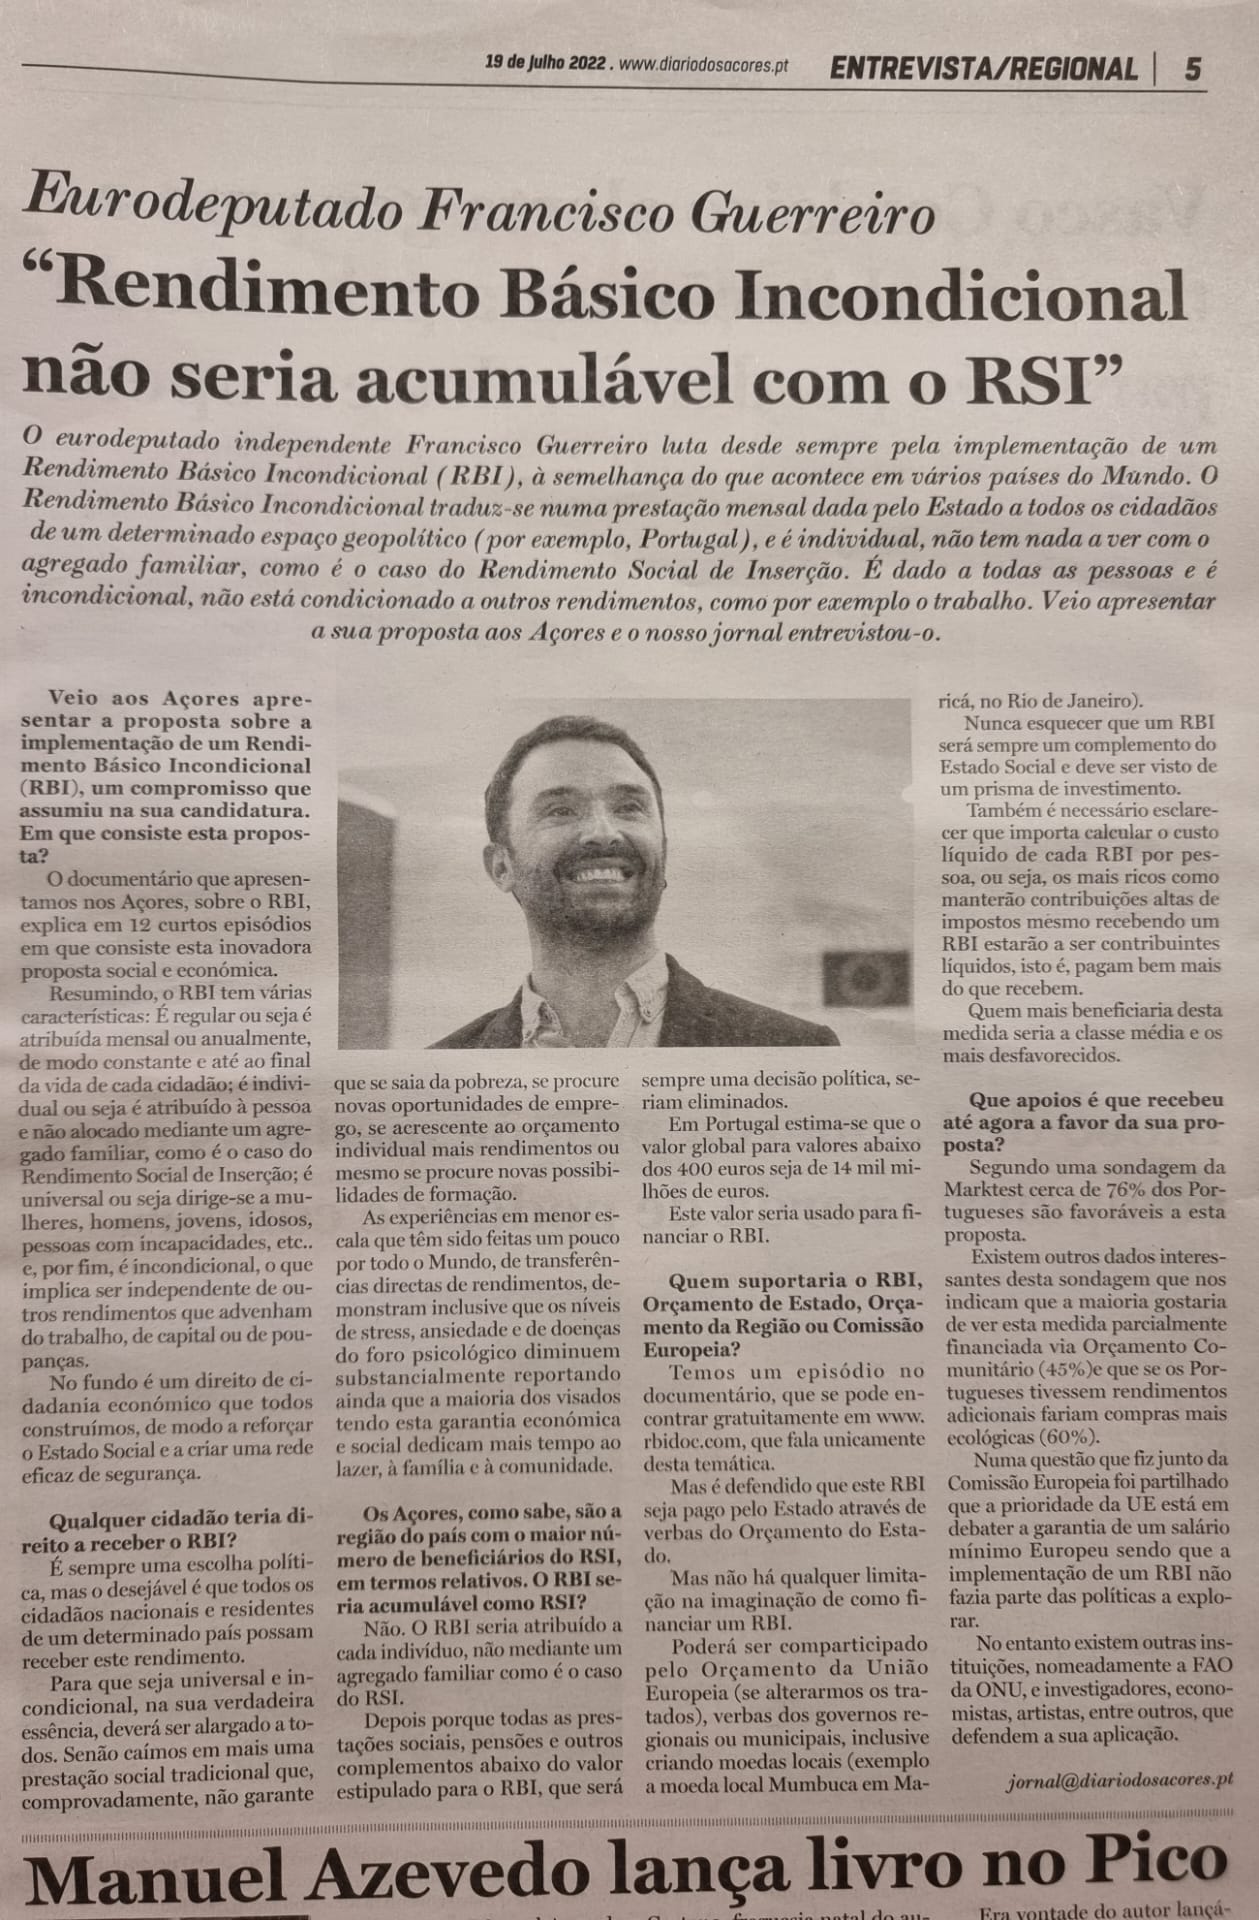 Diário dos Açores: 'Rendimento Básico Incondicional não seria acumulável com o RSI'